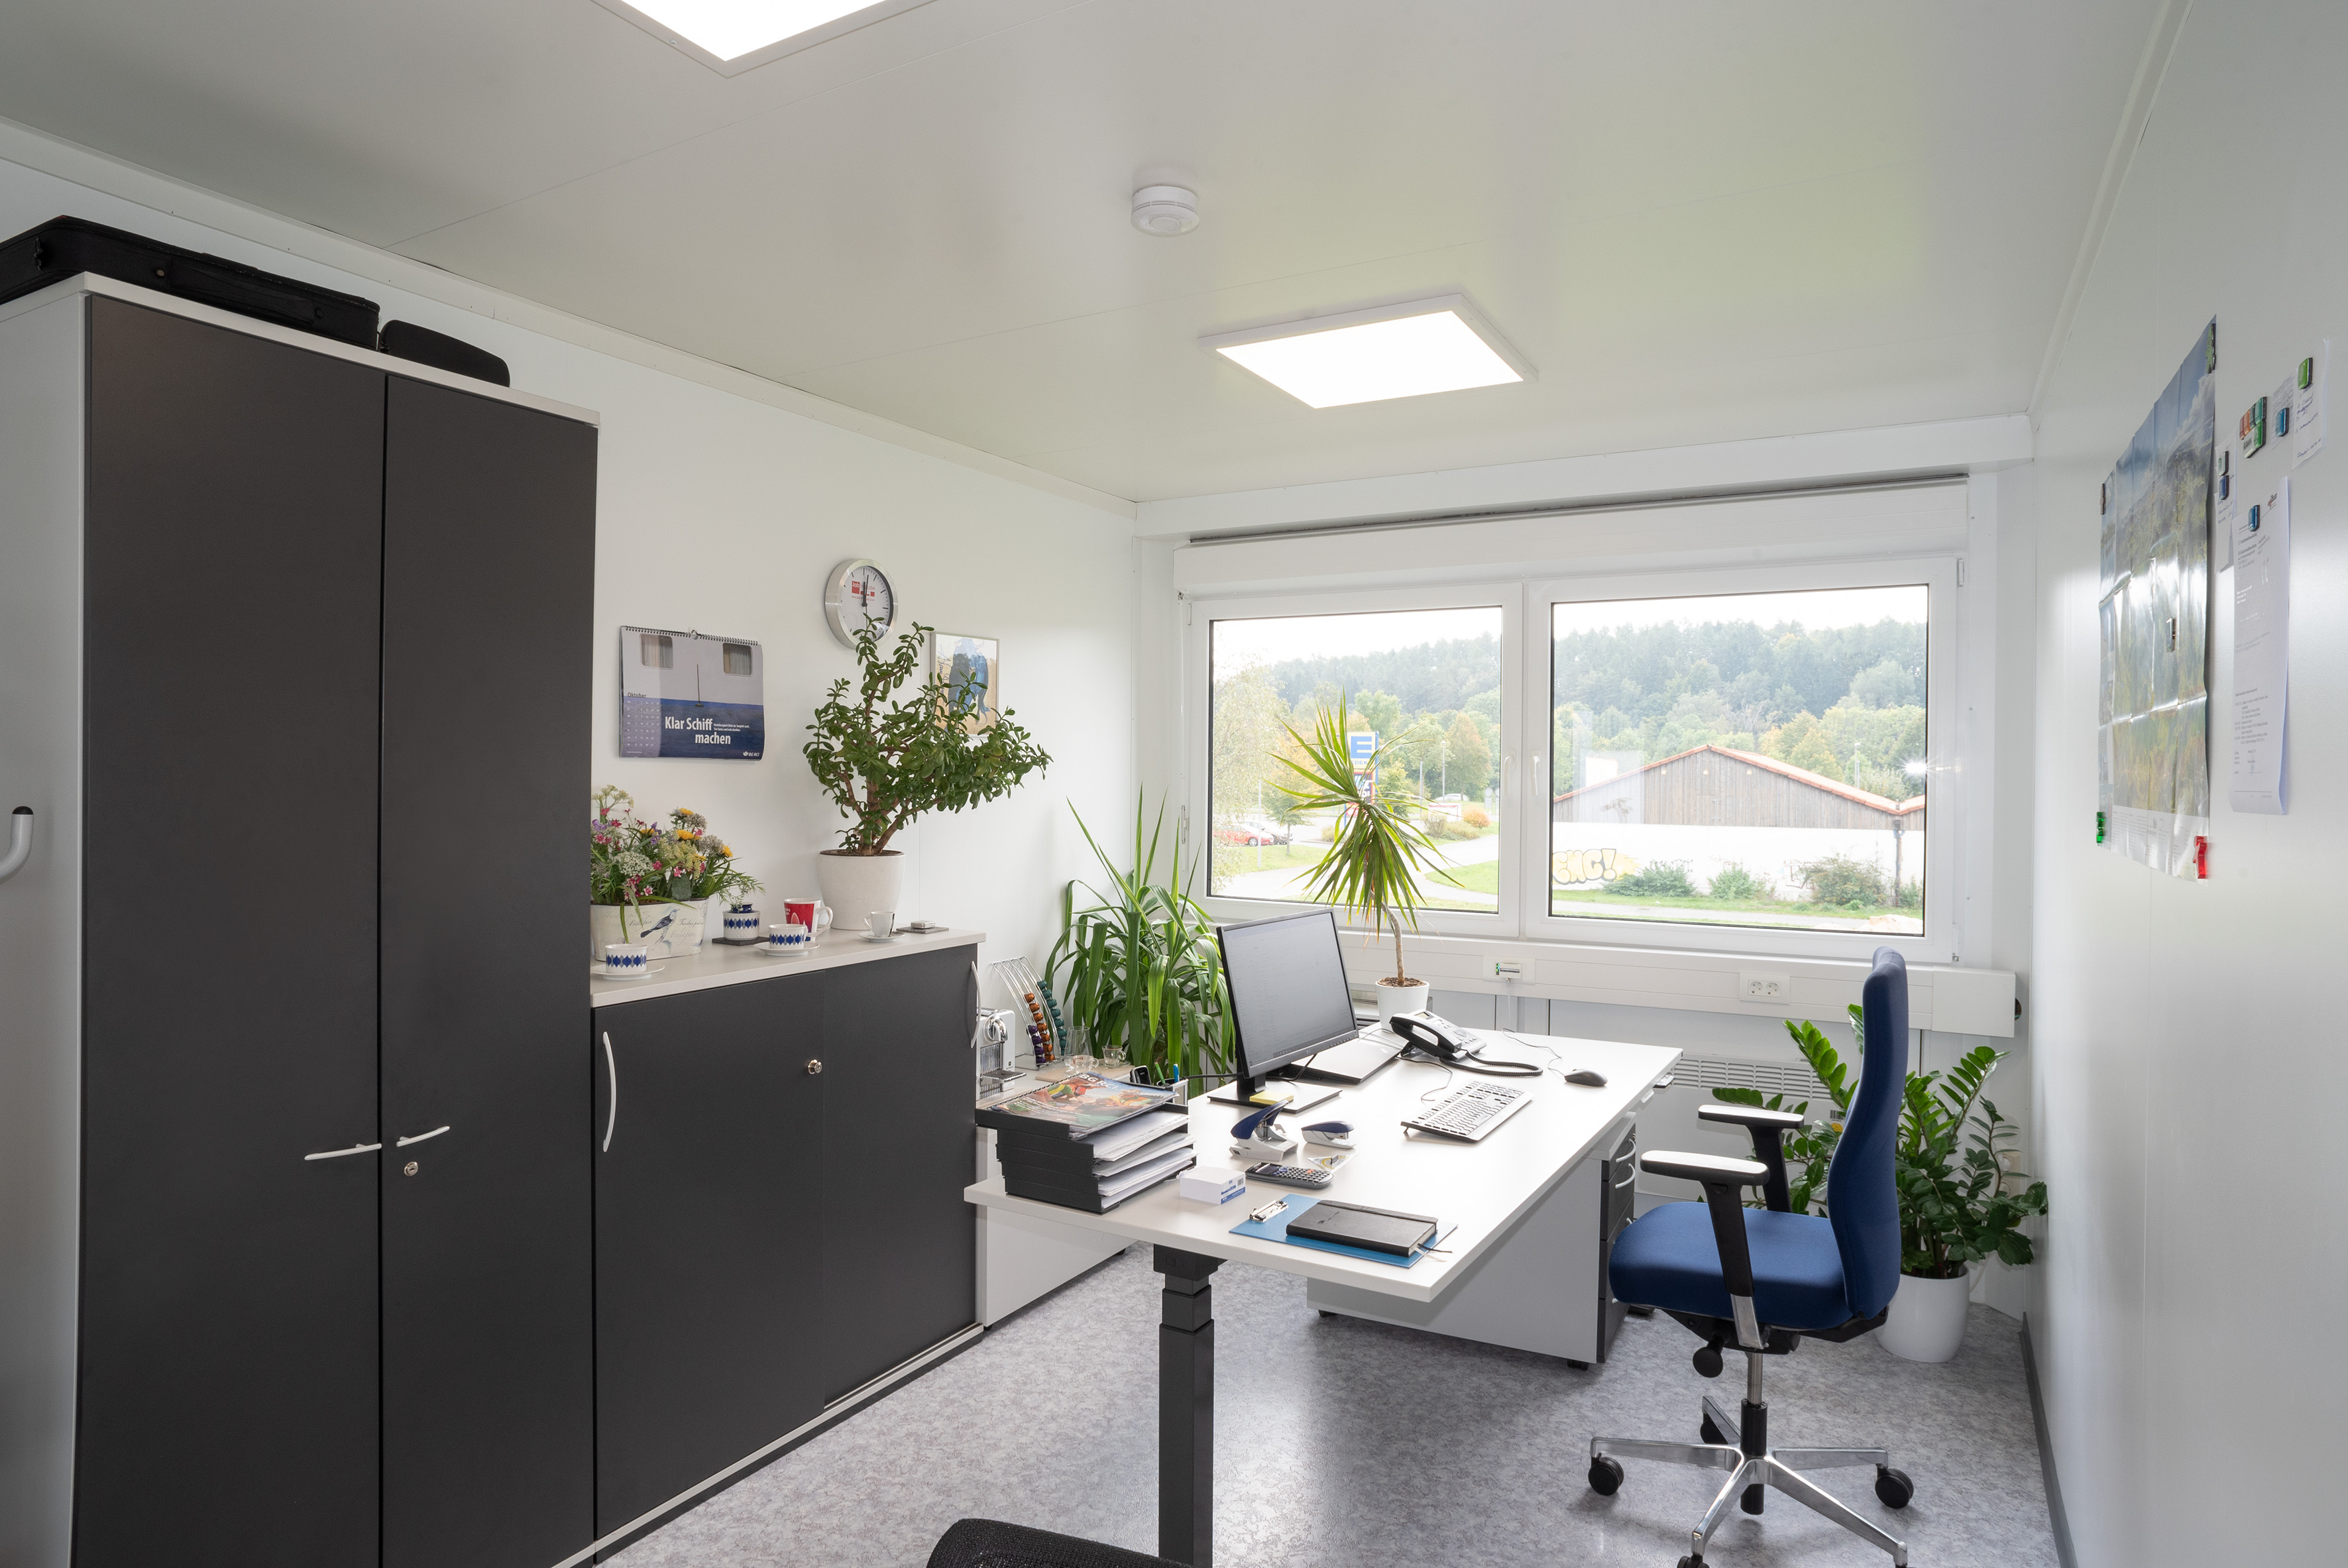 Die Büros schaffen eine helle und angenehme Arbeitsatmosphäre.